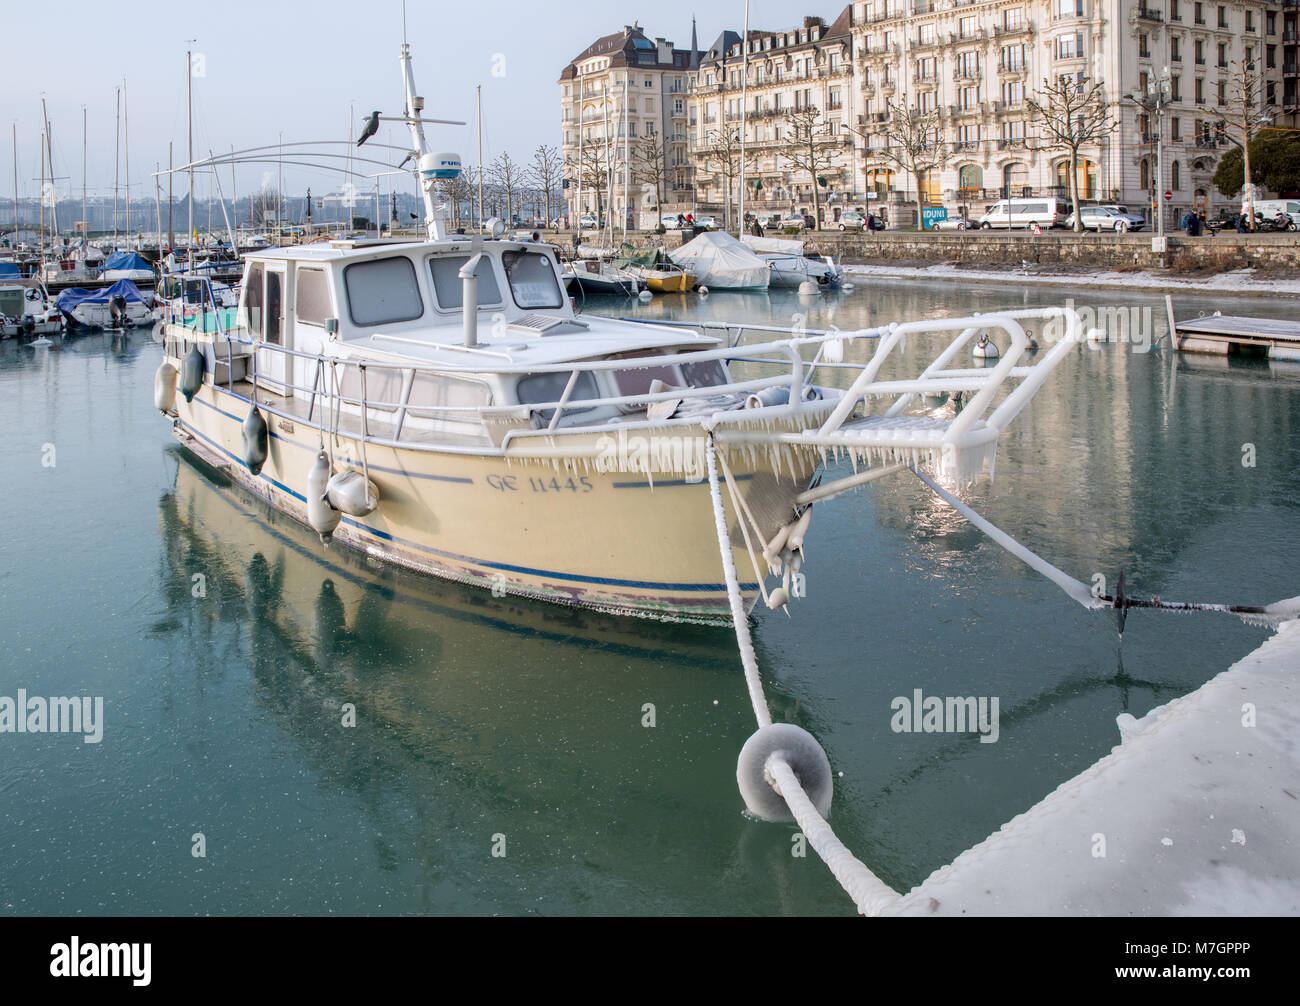 Boats in Geneva covered in ice, Geneva, Switzerland Stock Photo